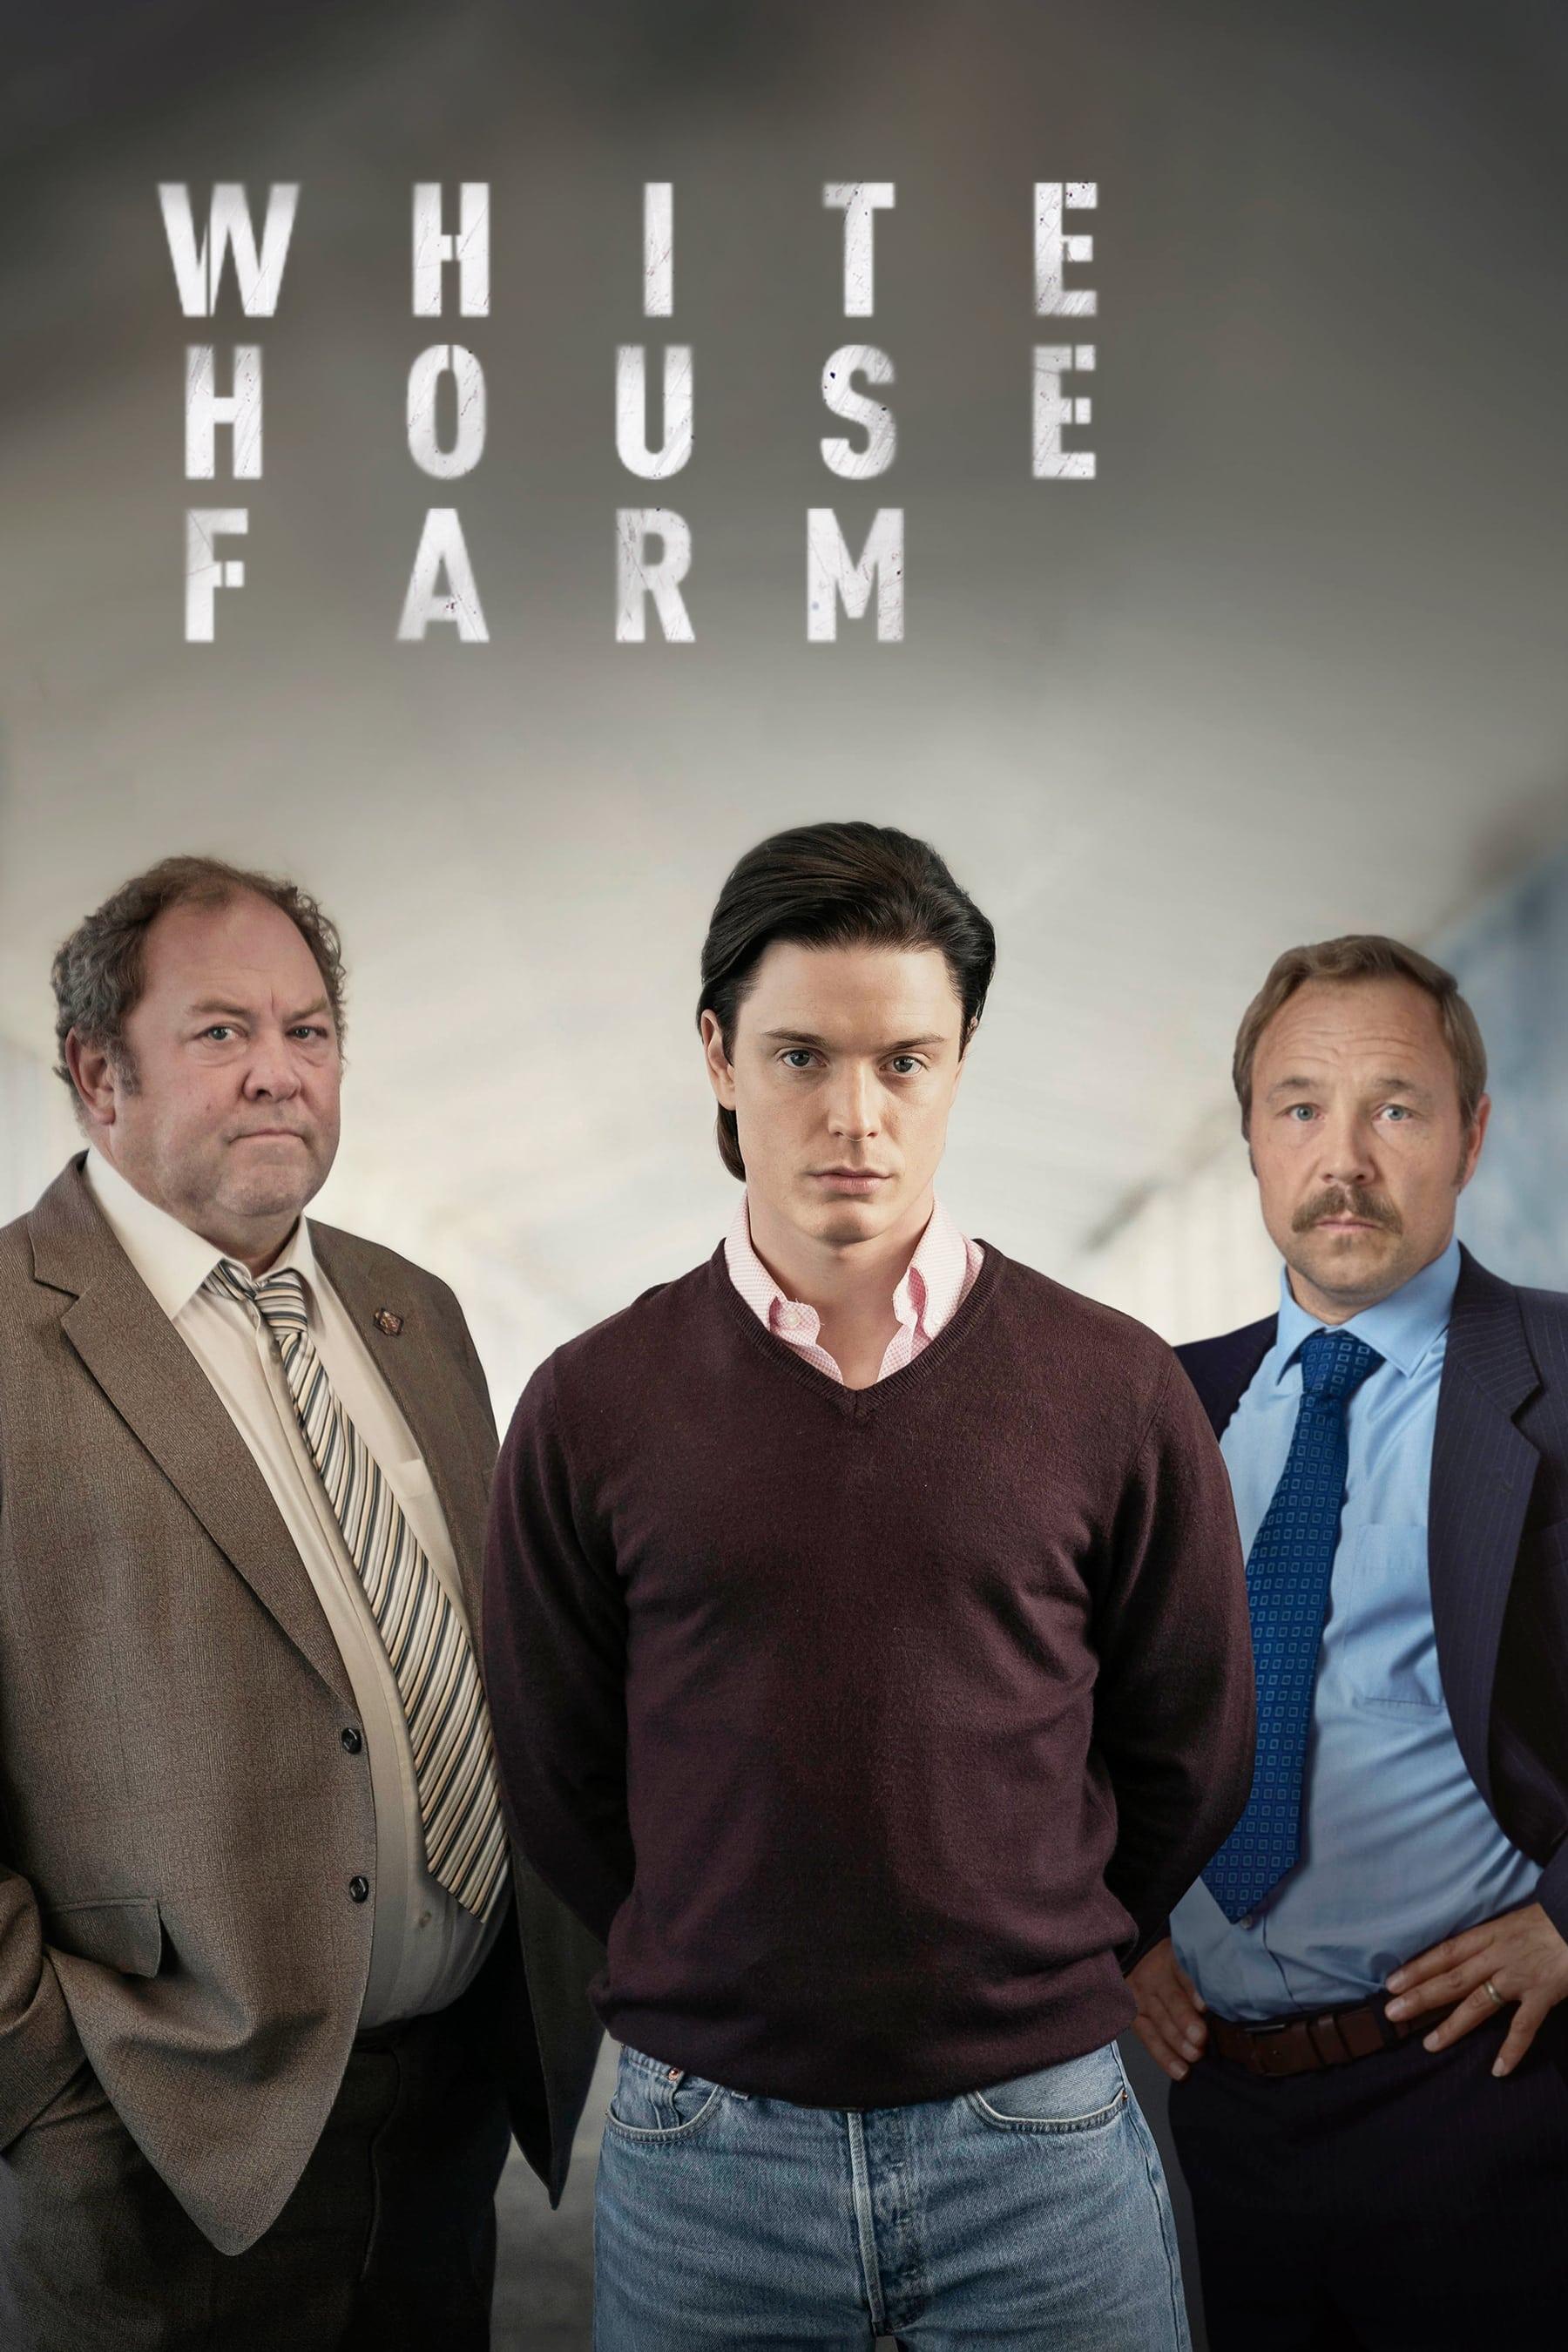 White House Farm poster